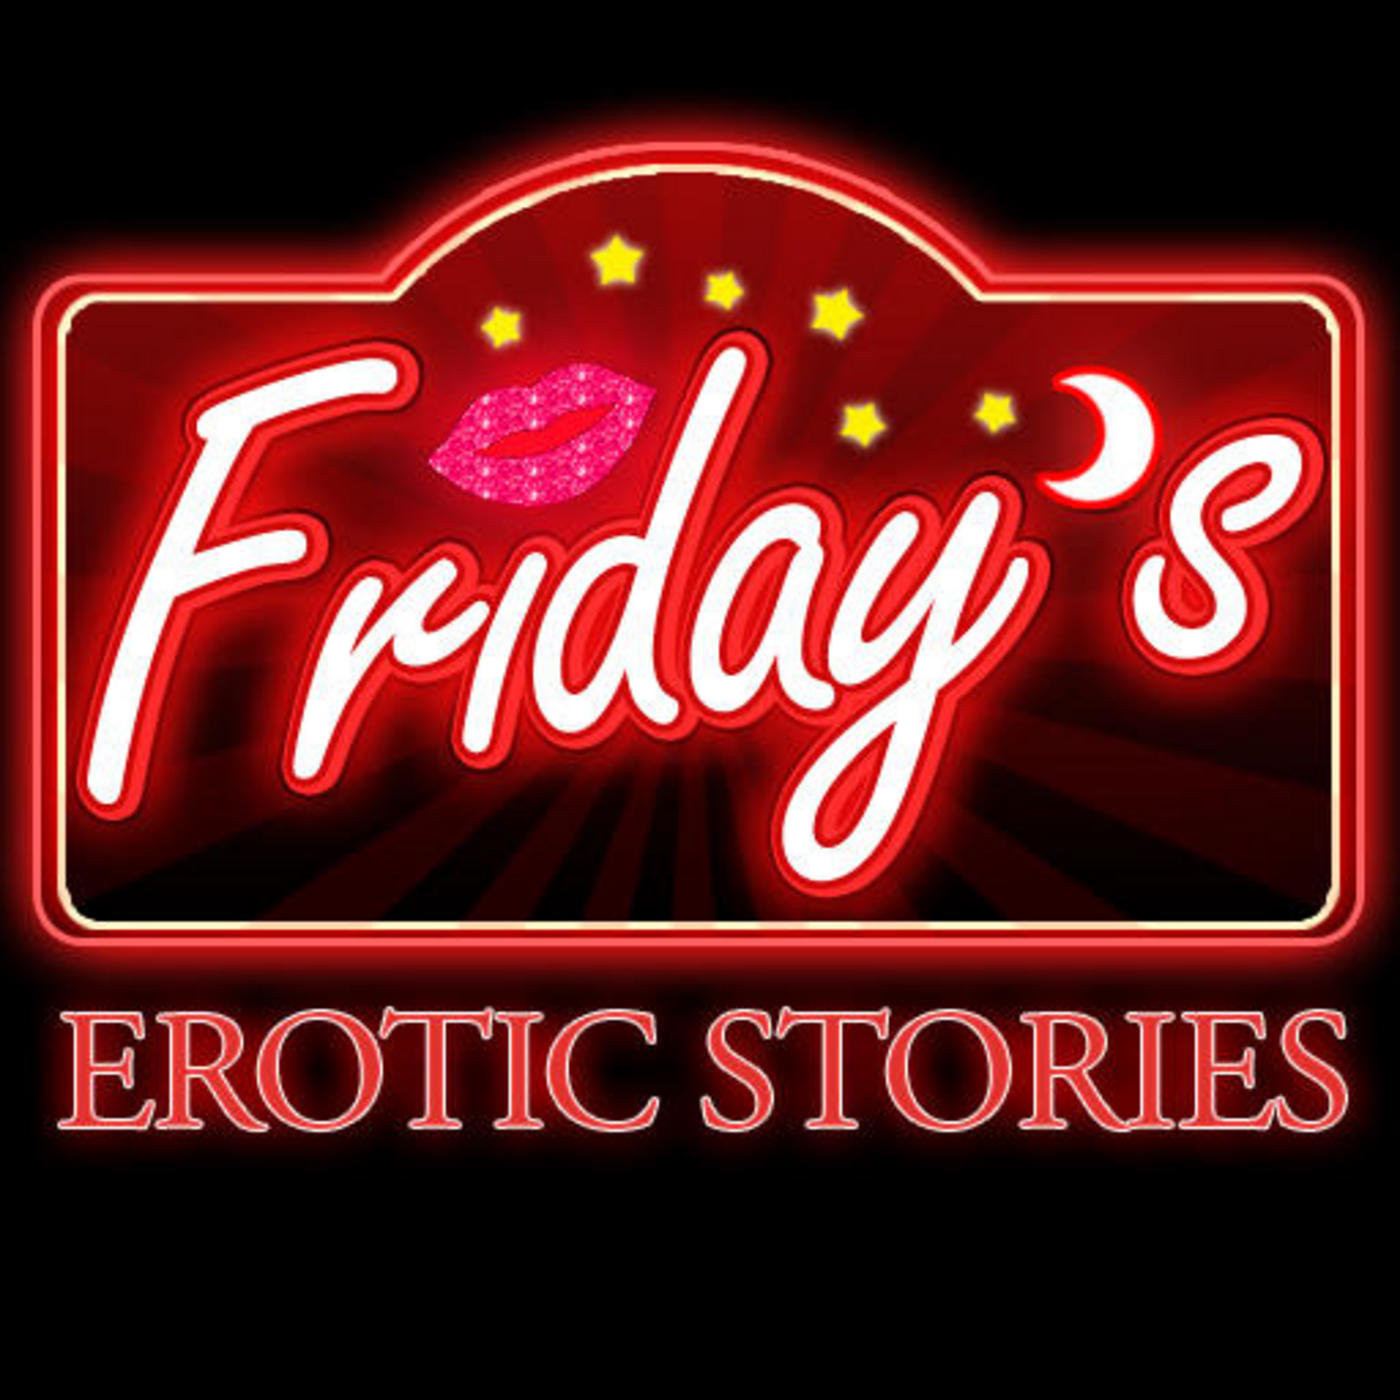 Cougar erotic stories